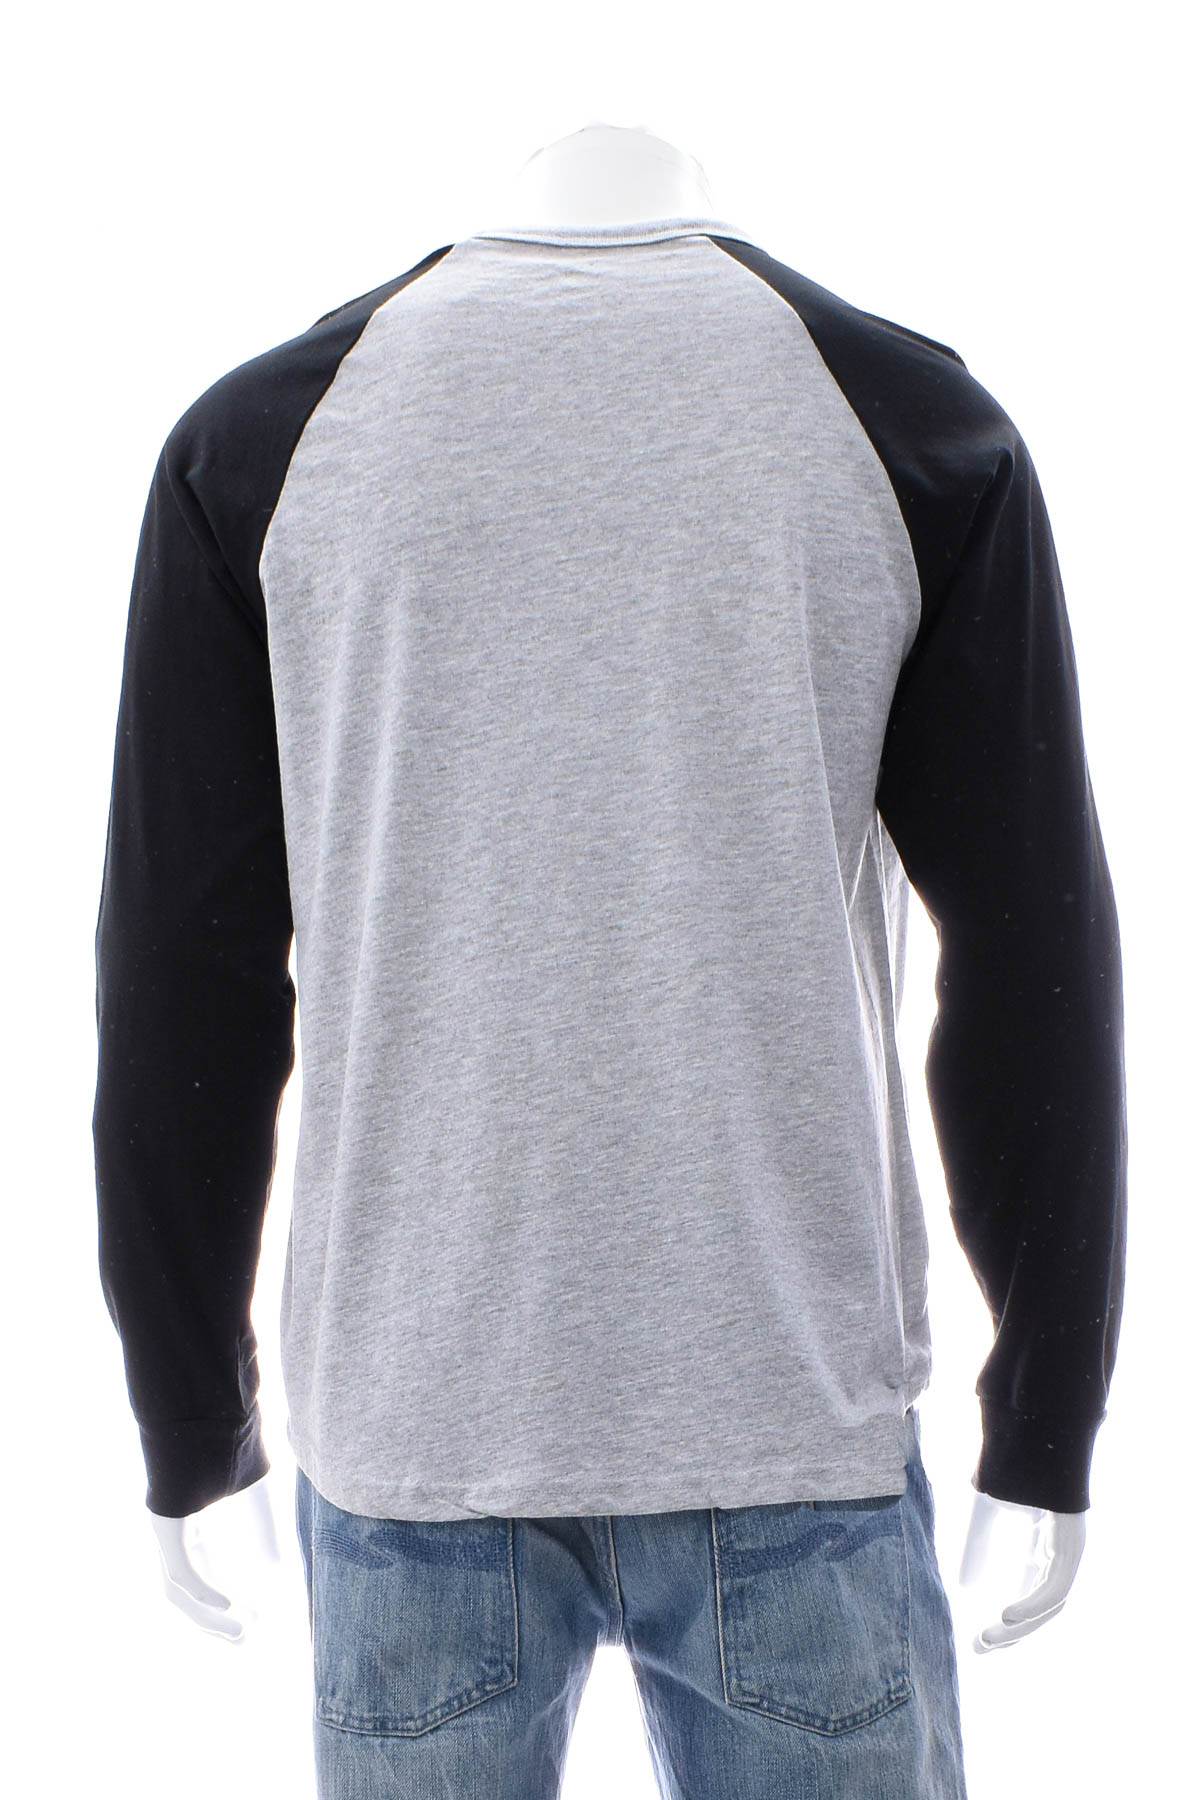 Men's sweater - Hurley - 1